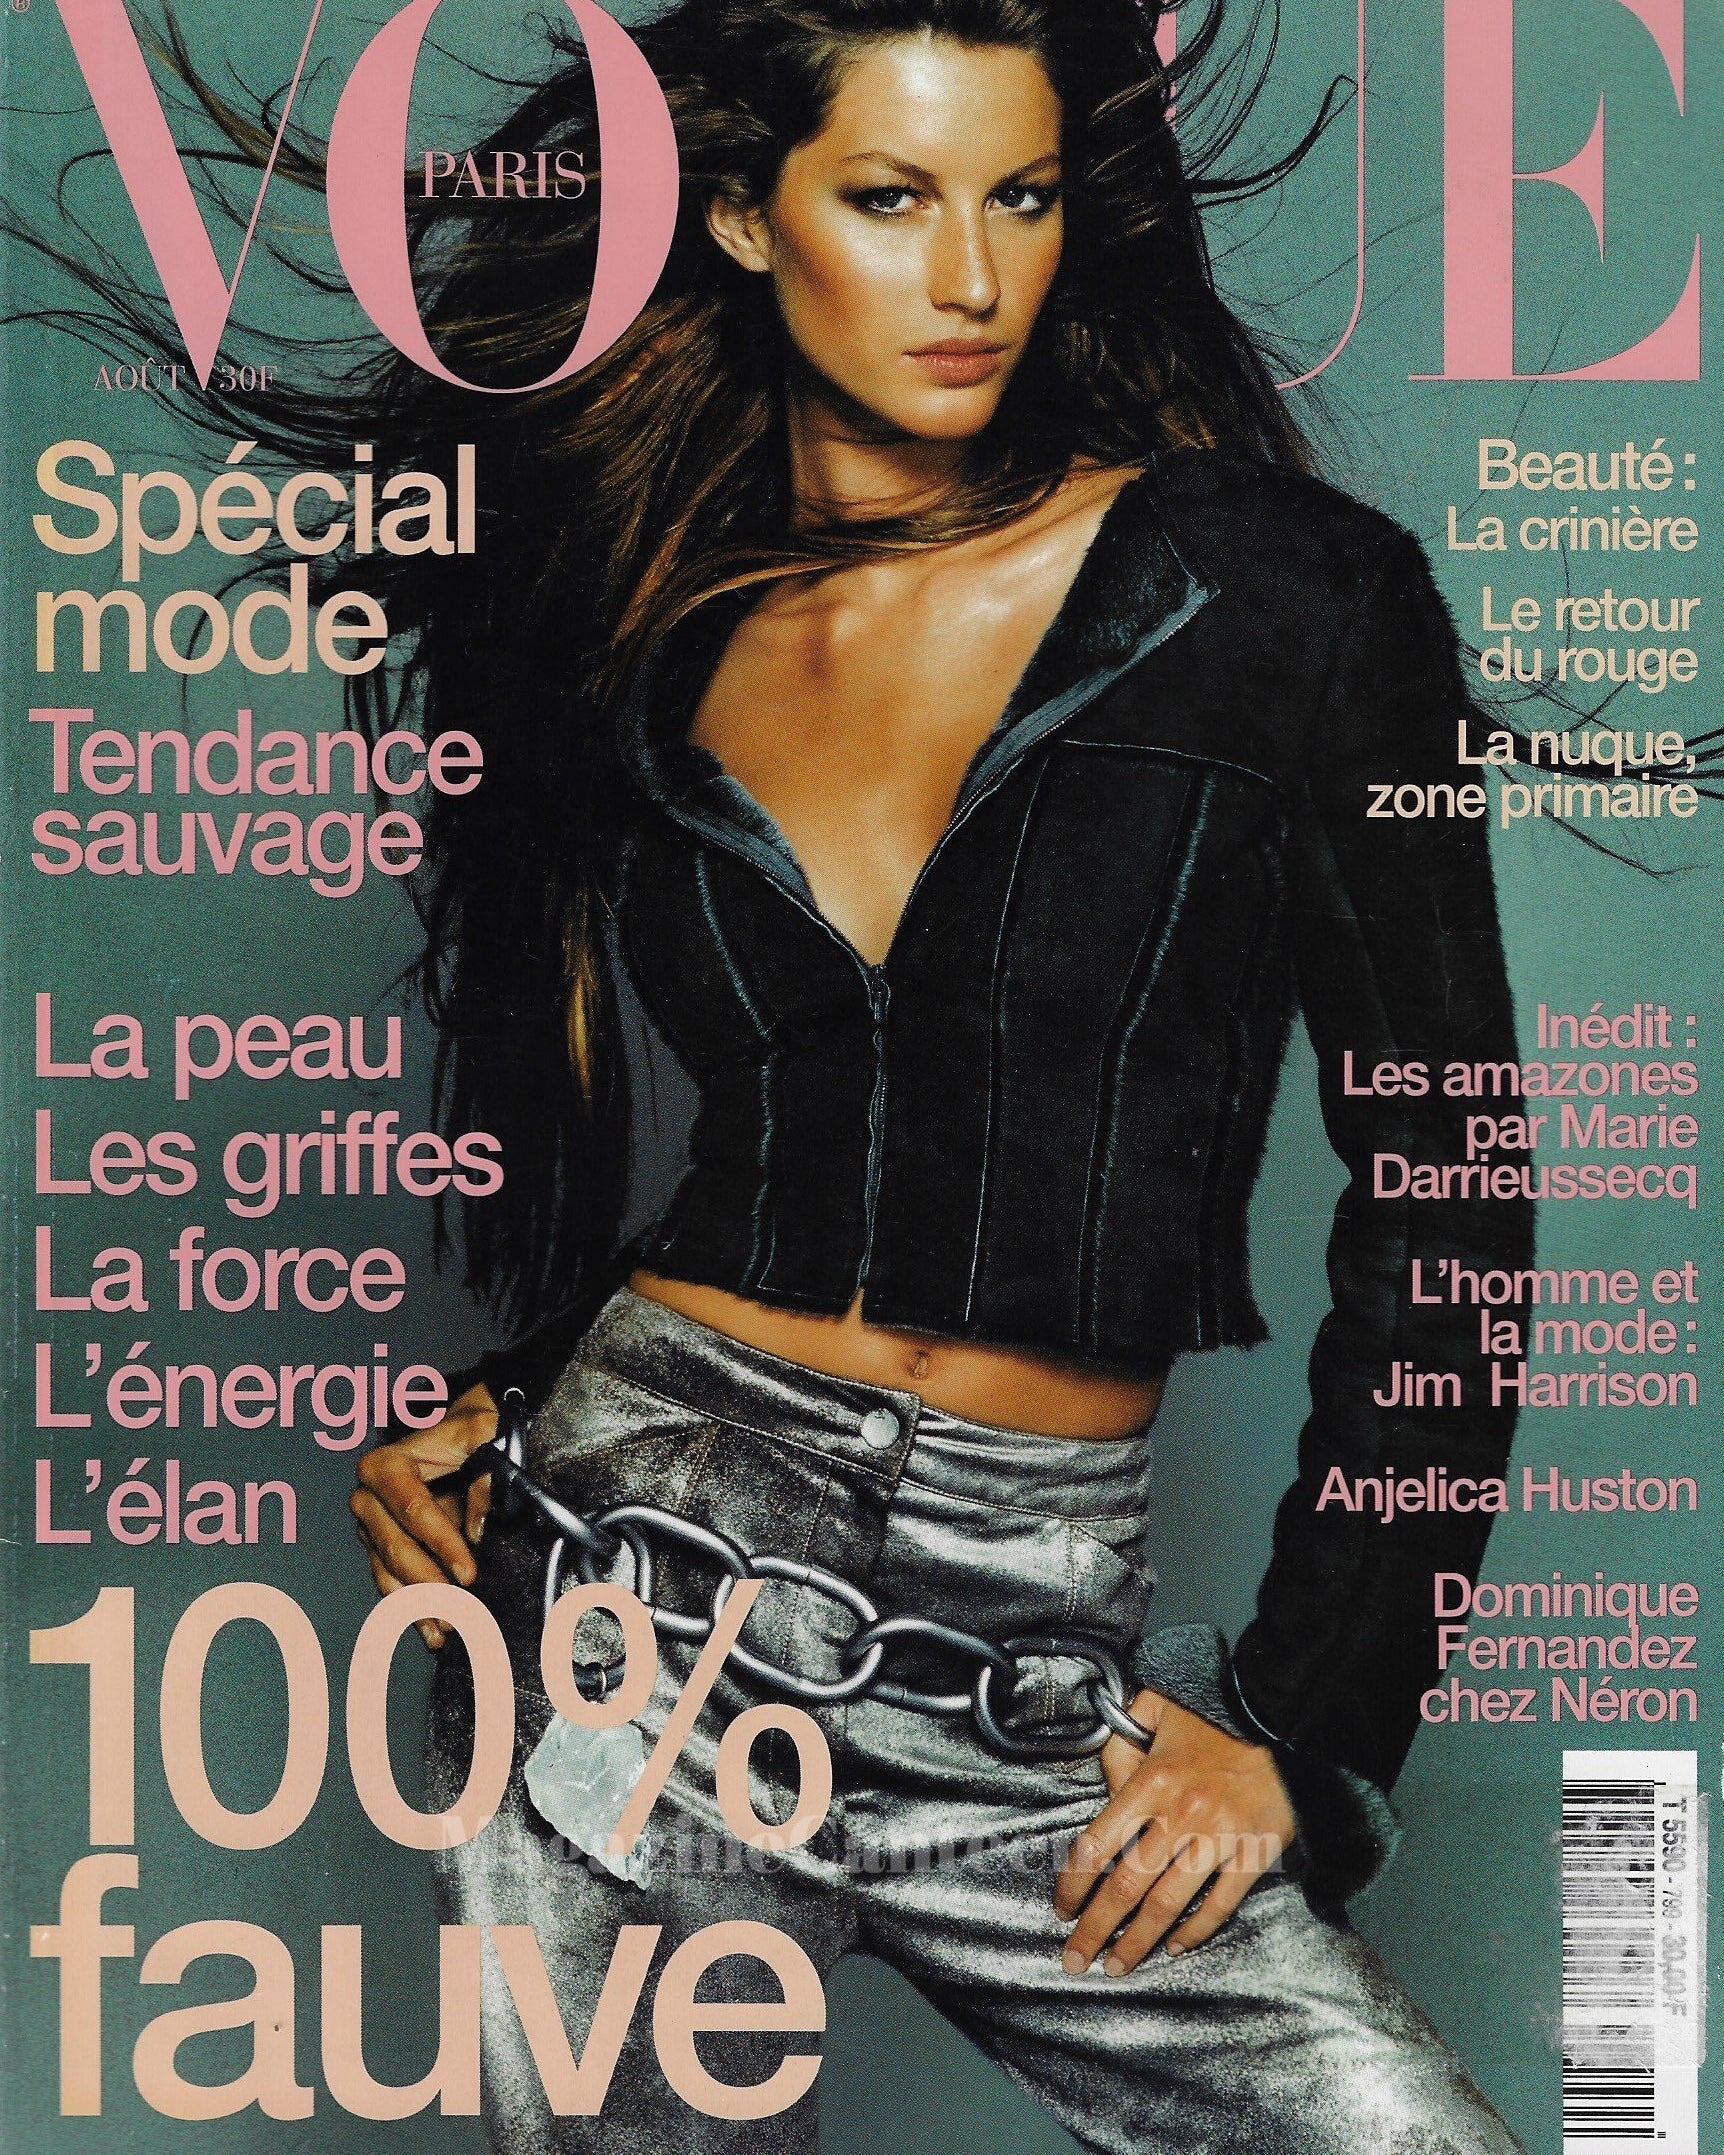 Vogue Paris Magazine 1999 - Gisele Bundchen